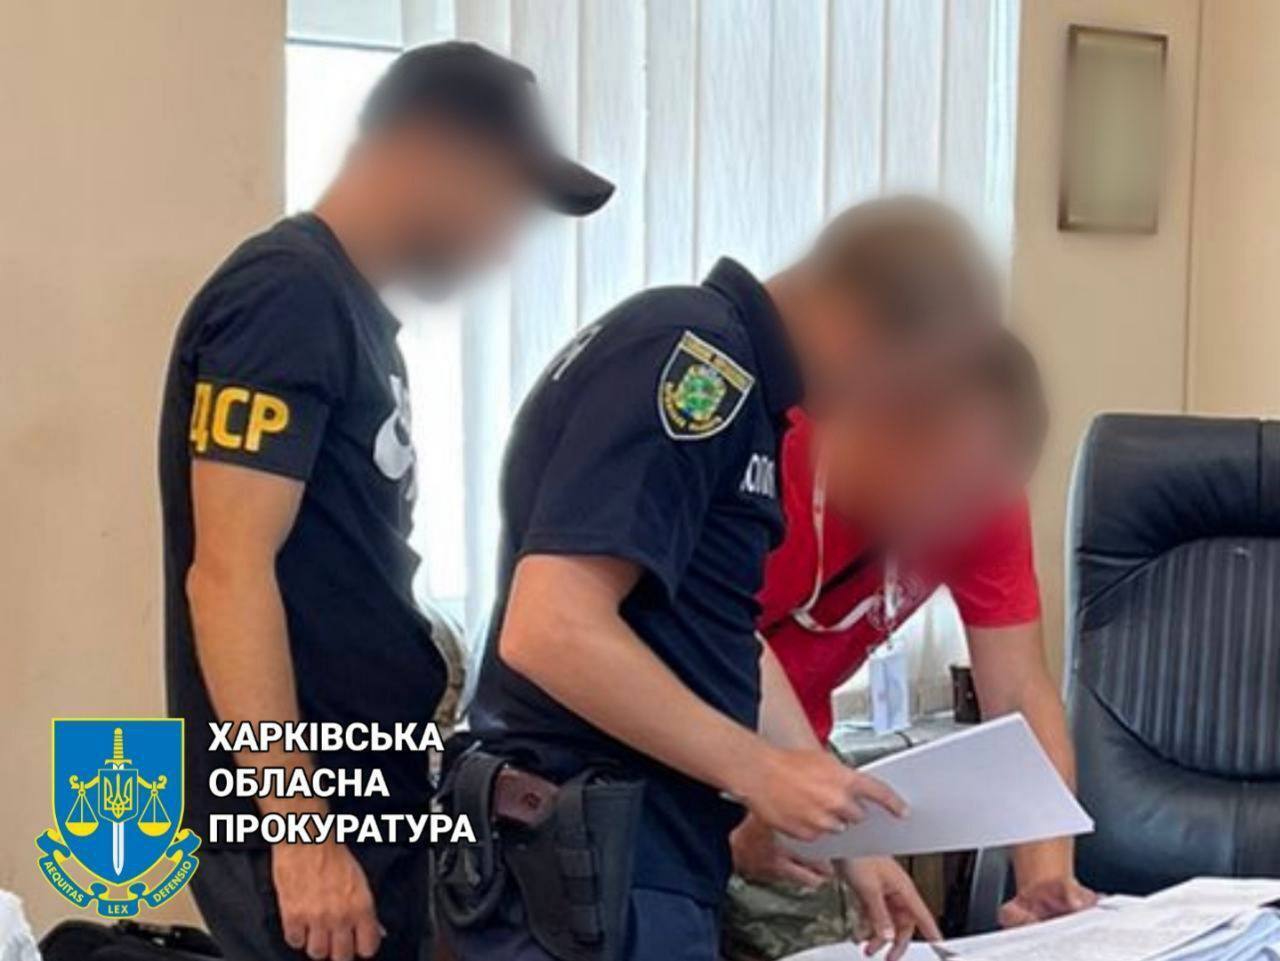 Добровільно надав окупантам транспортні засоби: житель Харківщини отримав 5 років в'язниці за допомогу ворогу. Фото